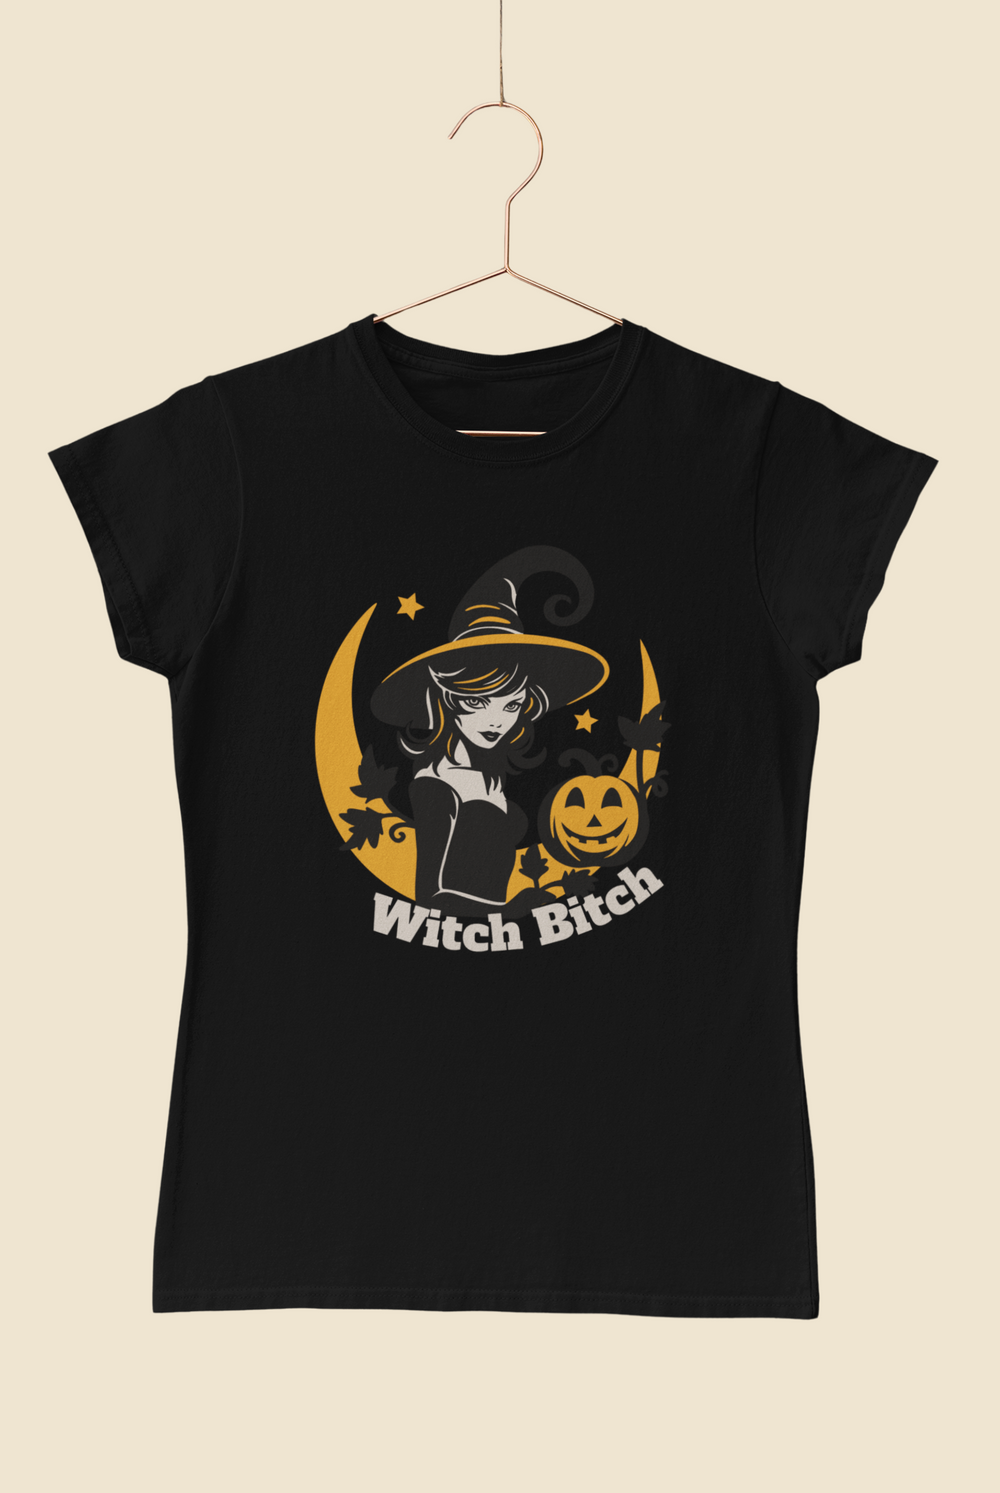 Witch Bitch Tee